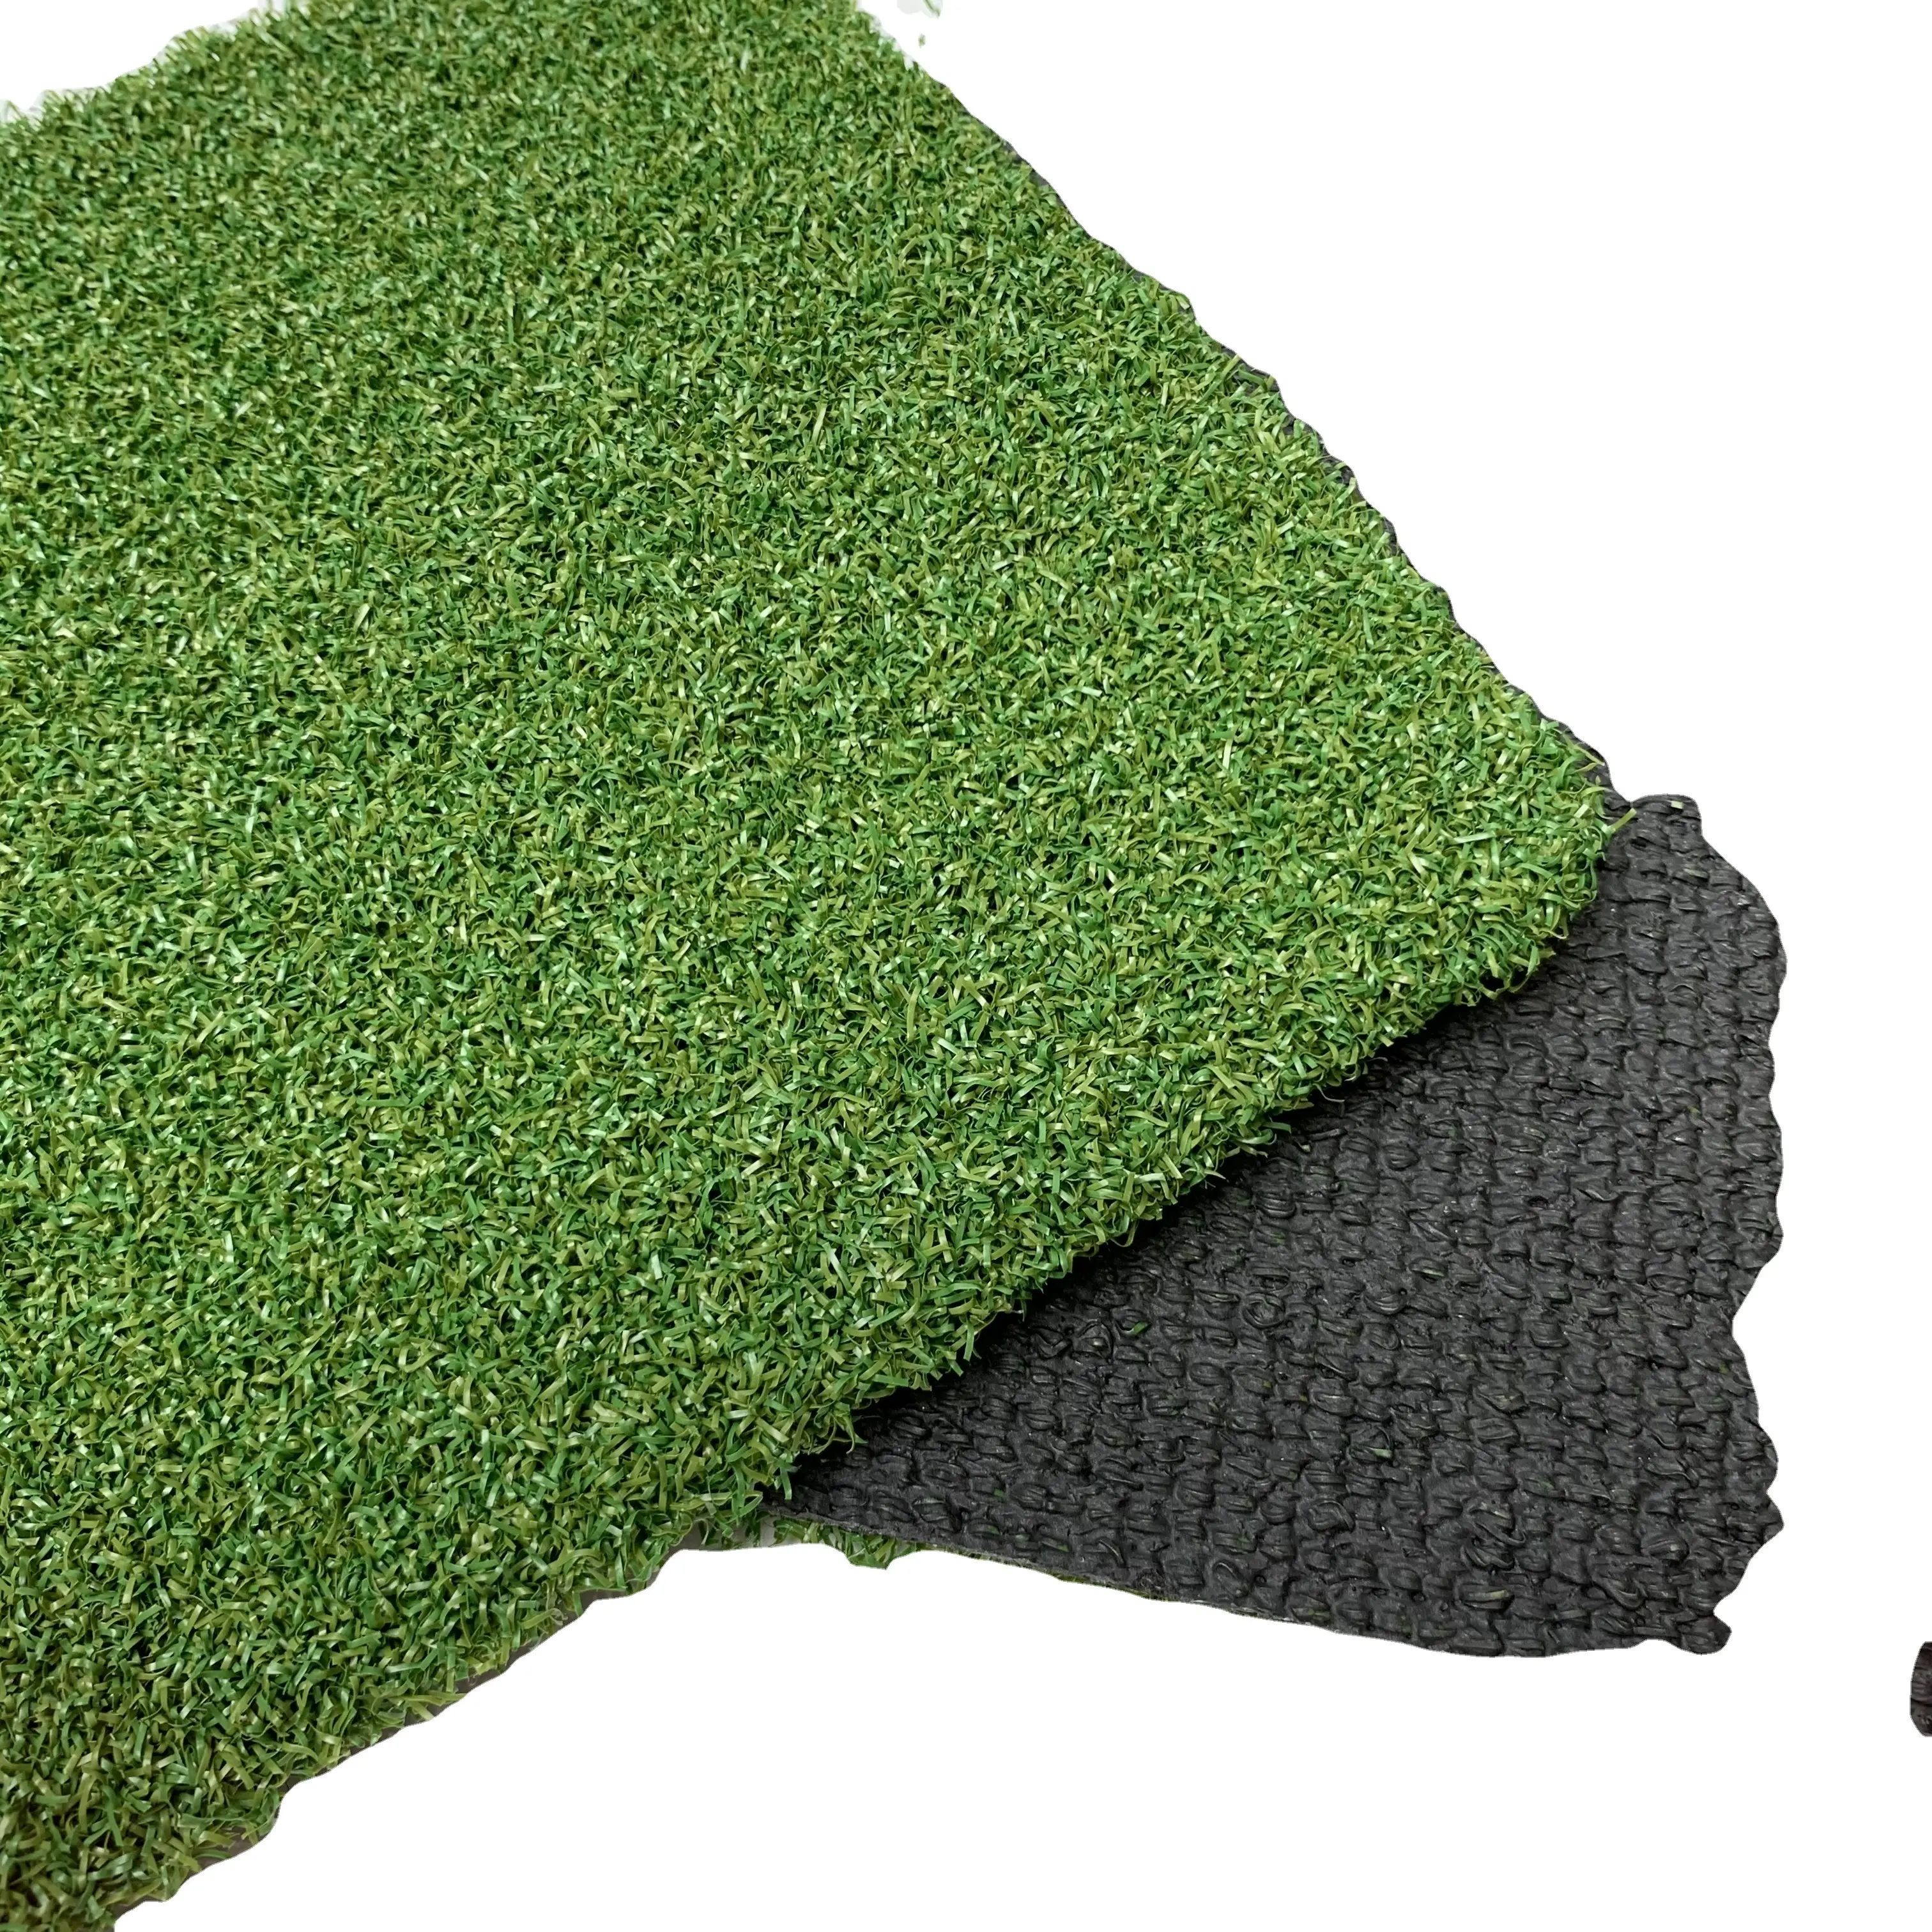 12mm di alta qualità per esterni in erba sintetica calda in erba sintetica resistente tappeto in erba artificiale Skyjade Tevbs-Yi PP